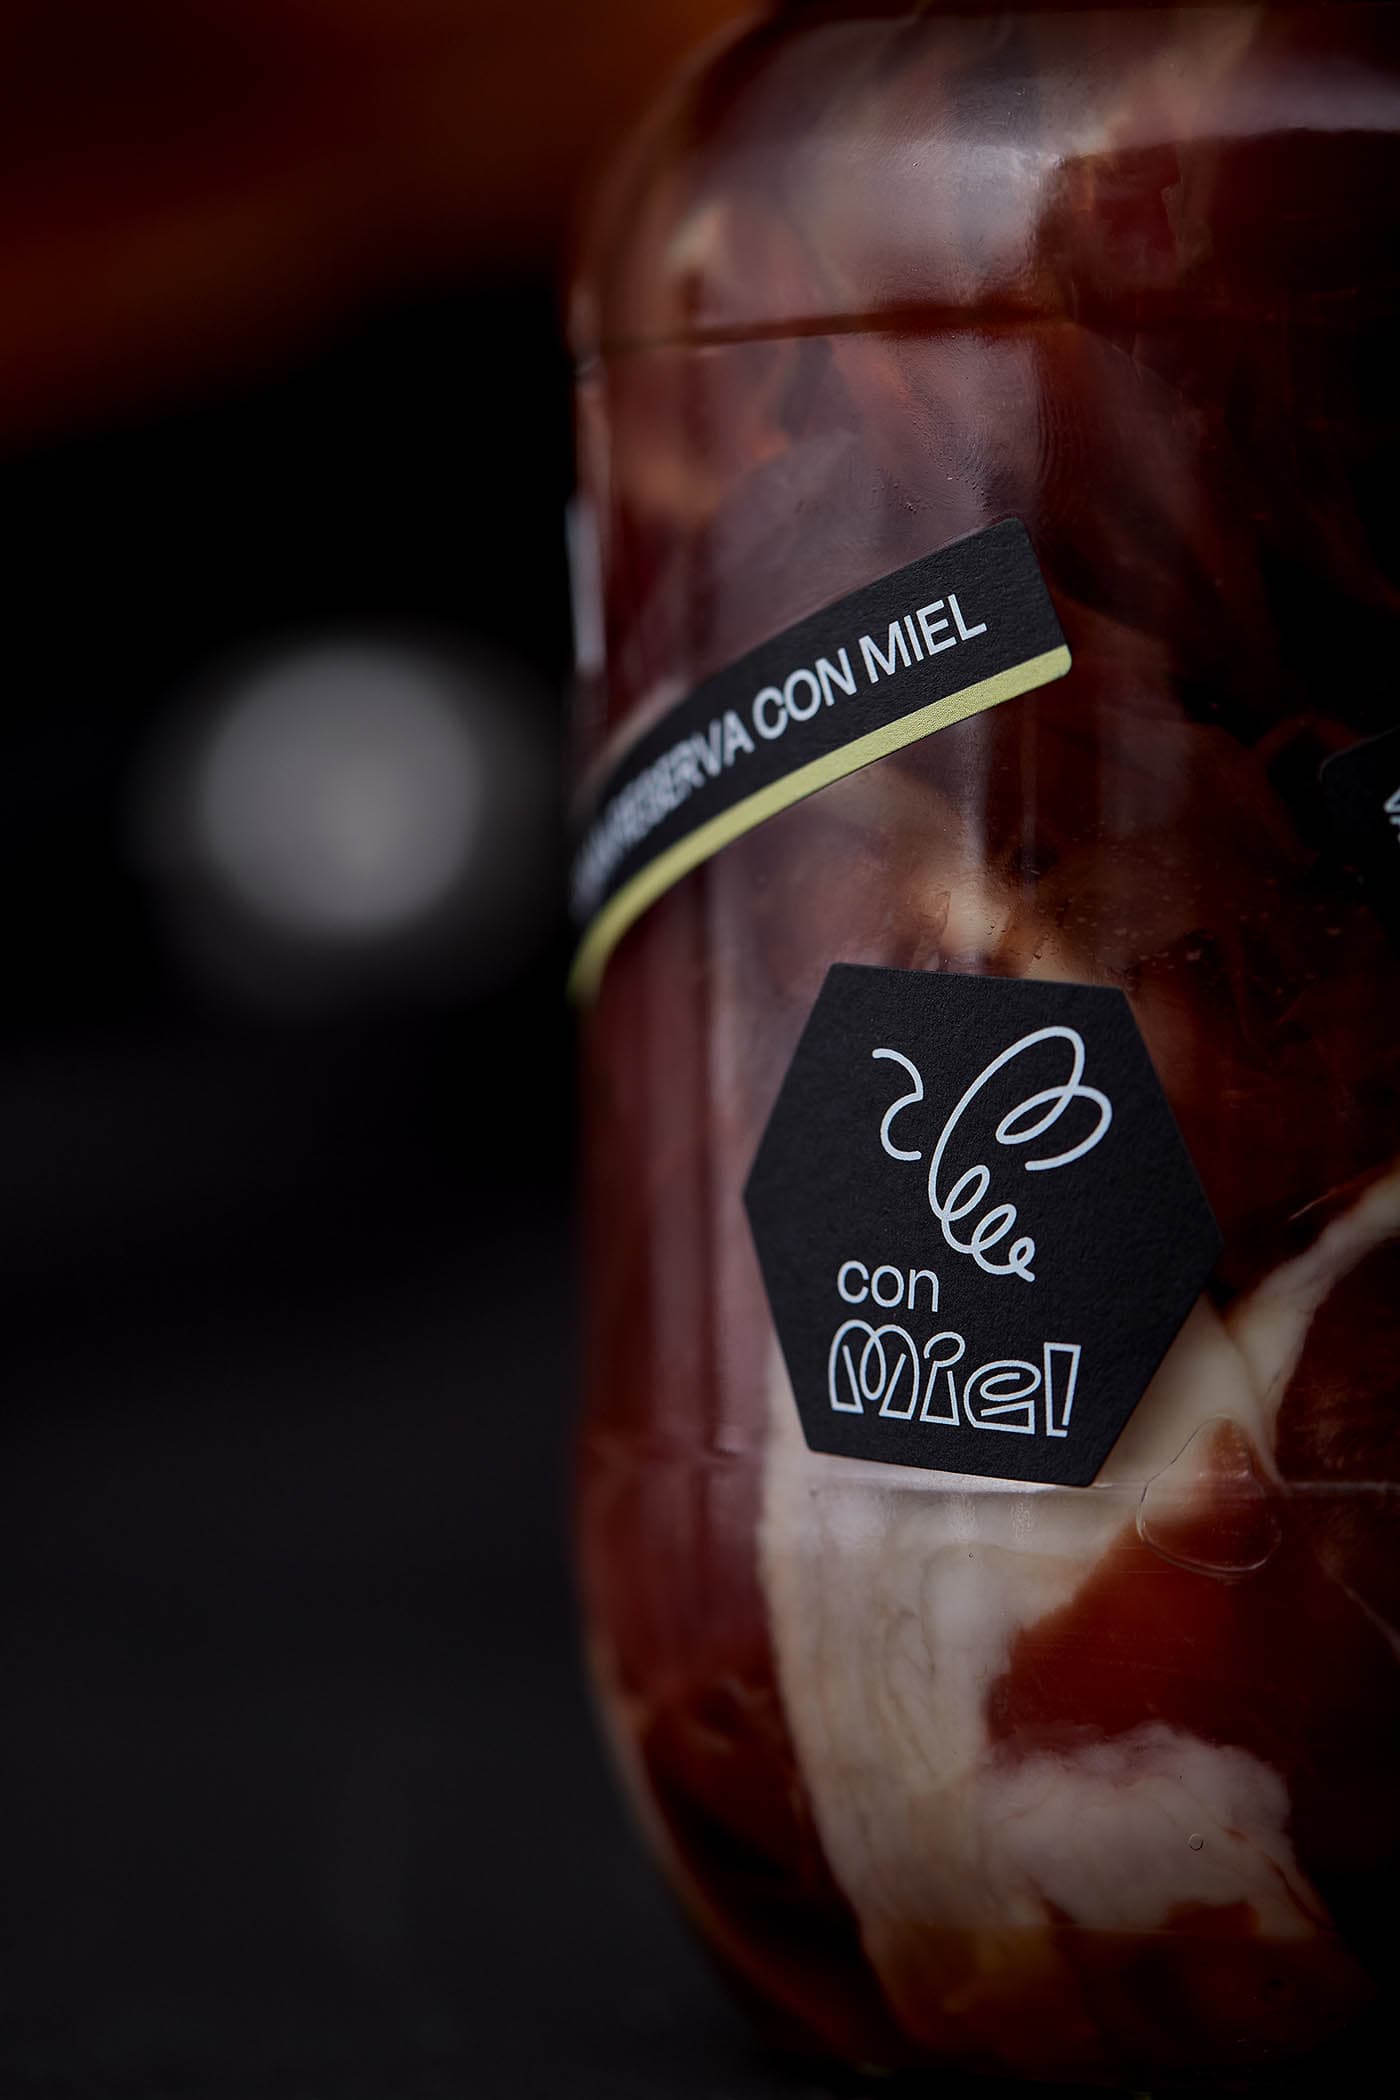 Diseño de branding, packaging y digital, incluido ecommerce, para marca de jamón conservado en aceite